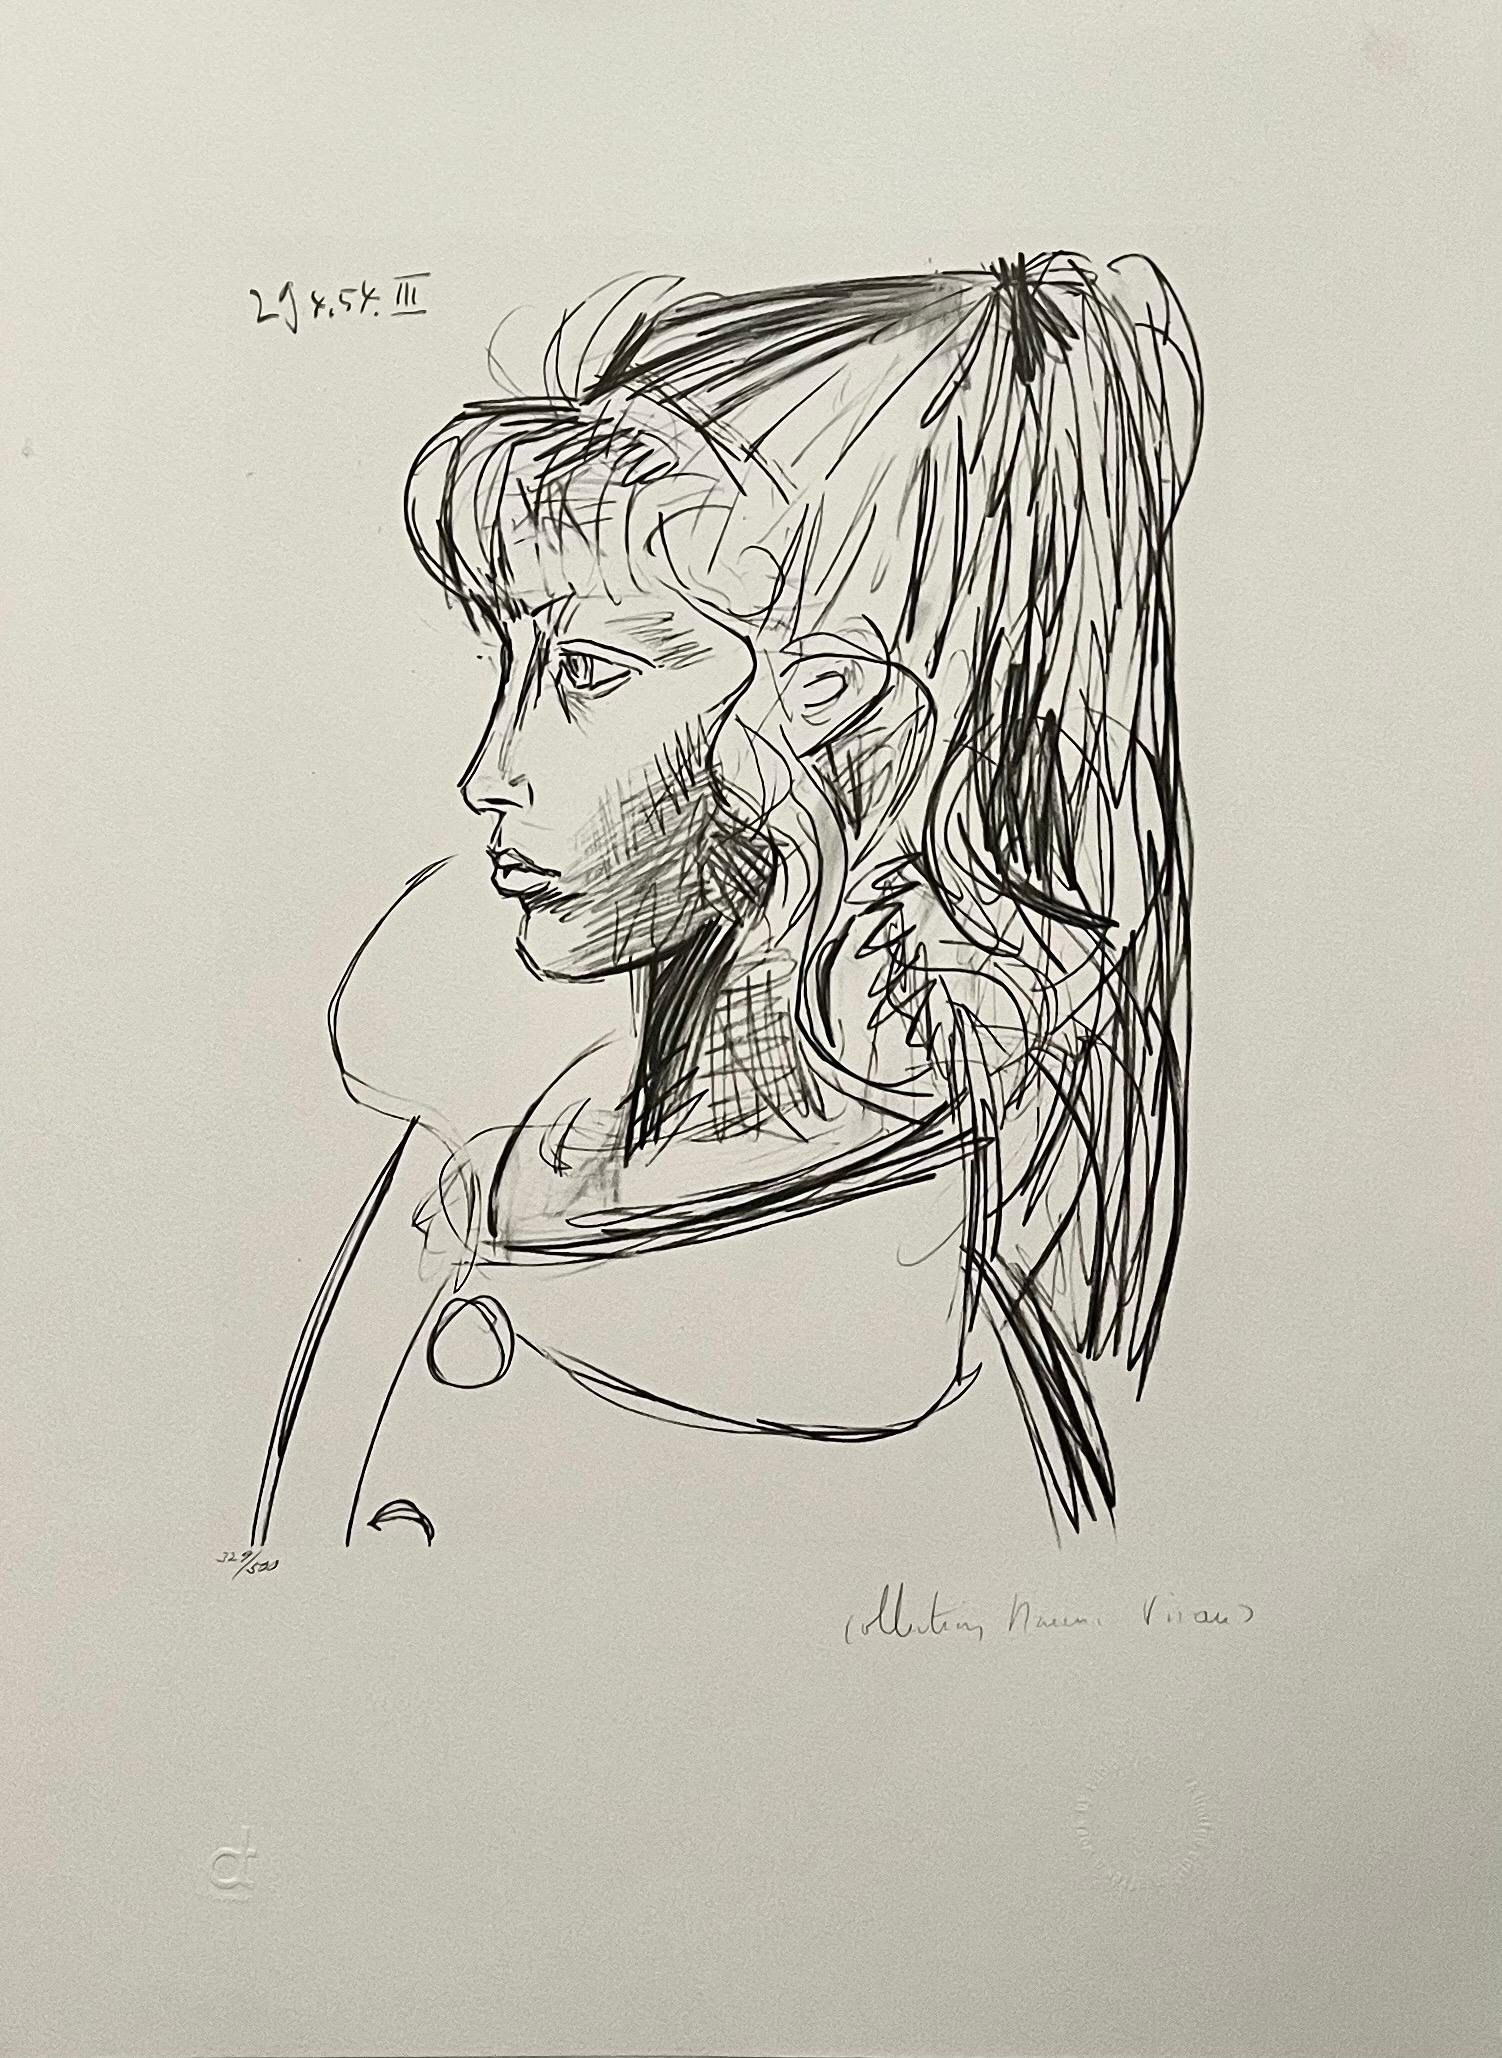 Abstract Print (after) Pablo Picasso - Portrait de jeune femme, lithographie cubiste signée à la main, propriété de Pablo Picasso